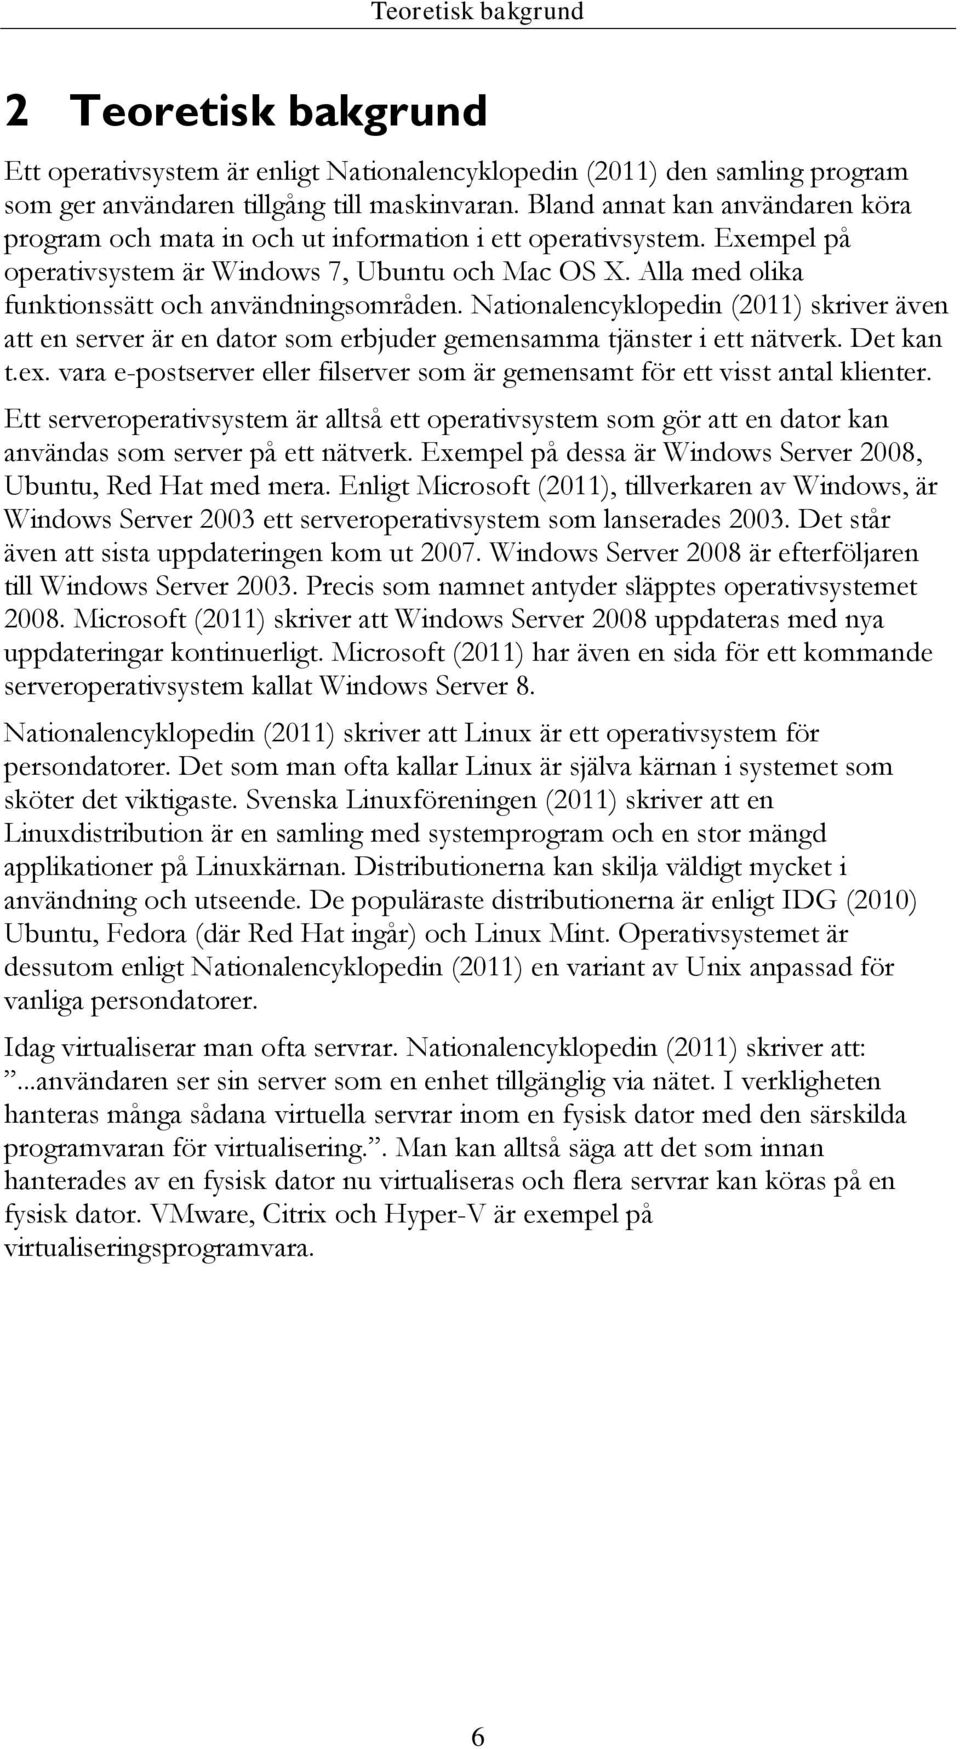 Alla med olika funktionssätt och användningsområden. Nationalencyklopedin (2011) skriver även att en server är en dator som erbjuder gemensamma tjänster i ett nätverk. Det kan t.ex.